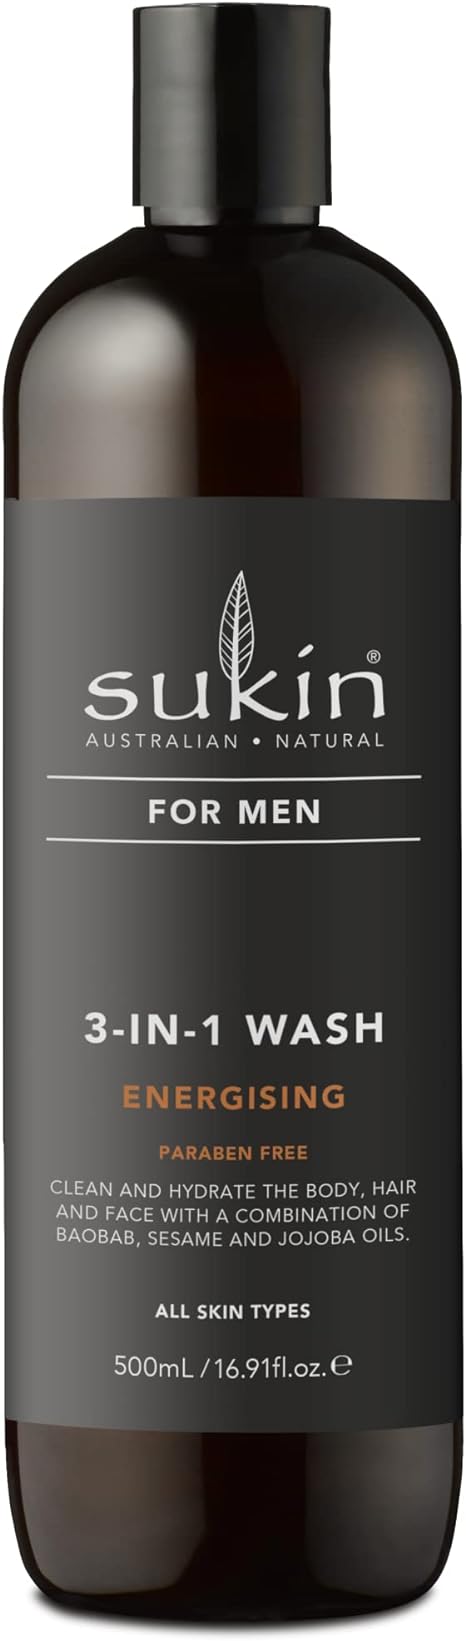 Sukin sukin for men 3-in-1 wash energising, 500 gram